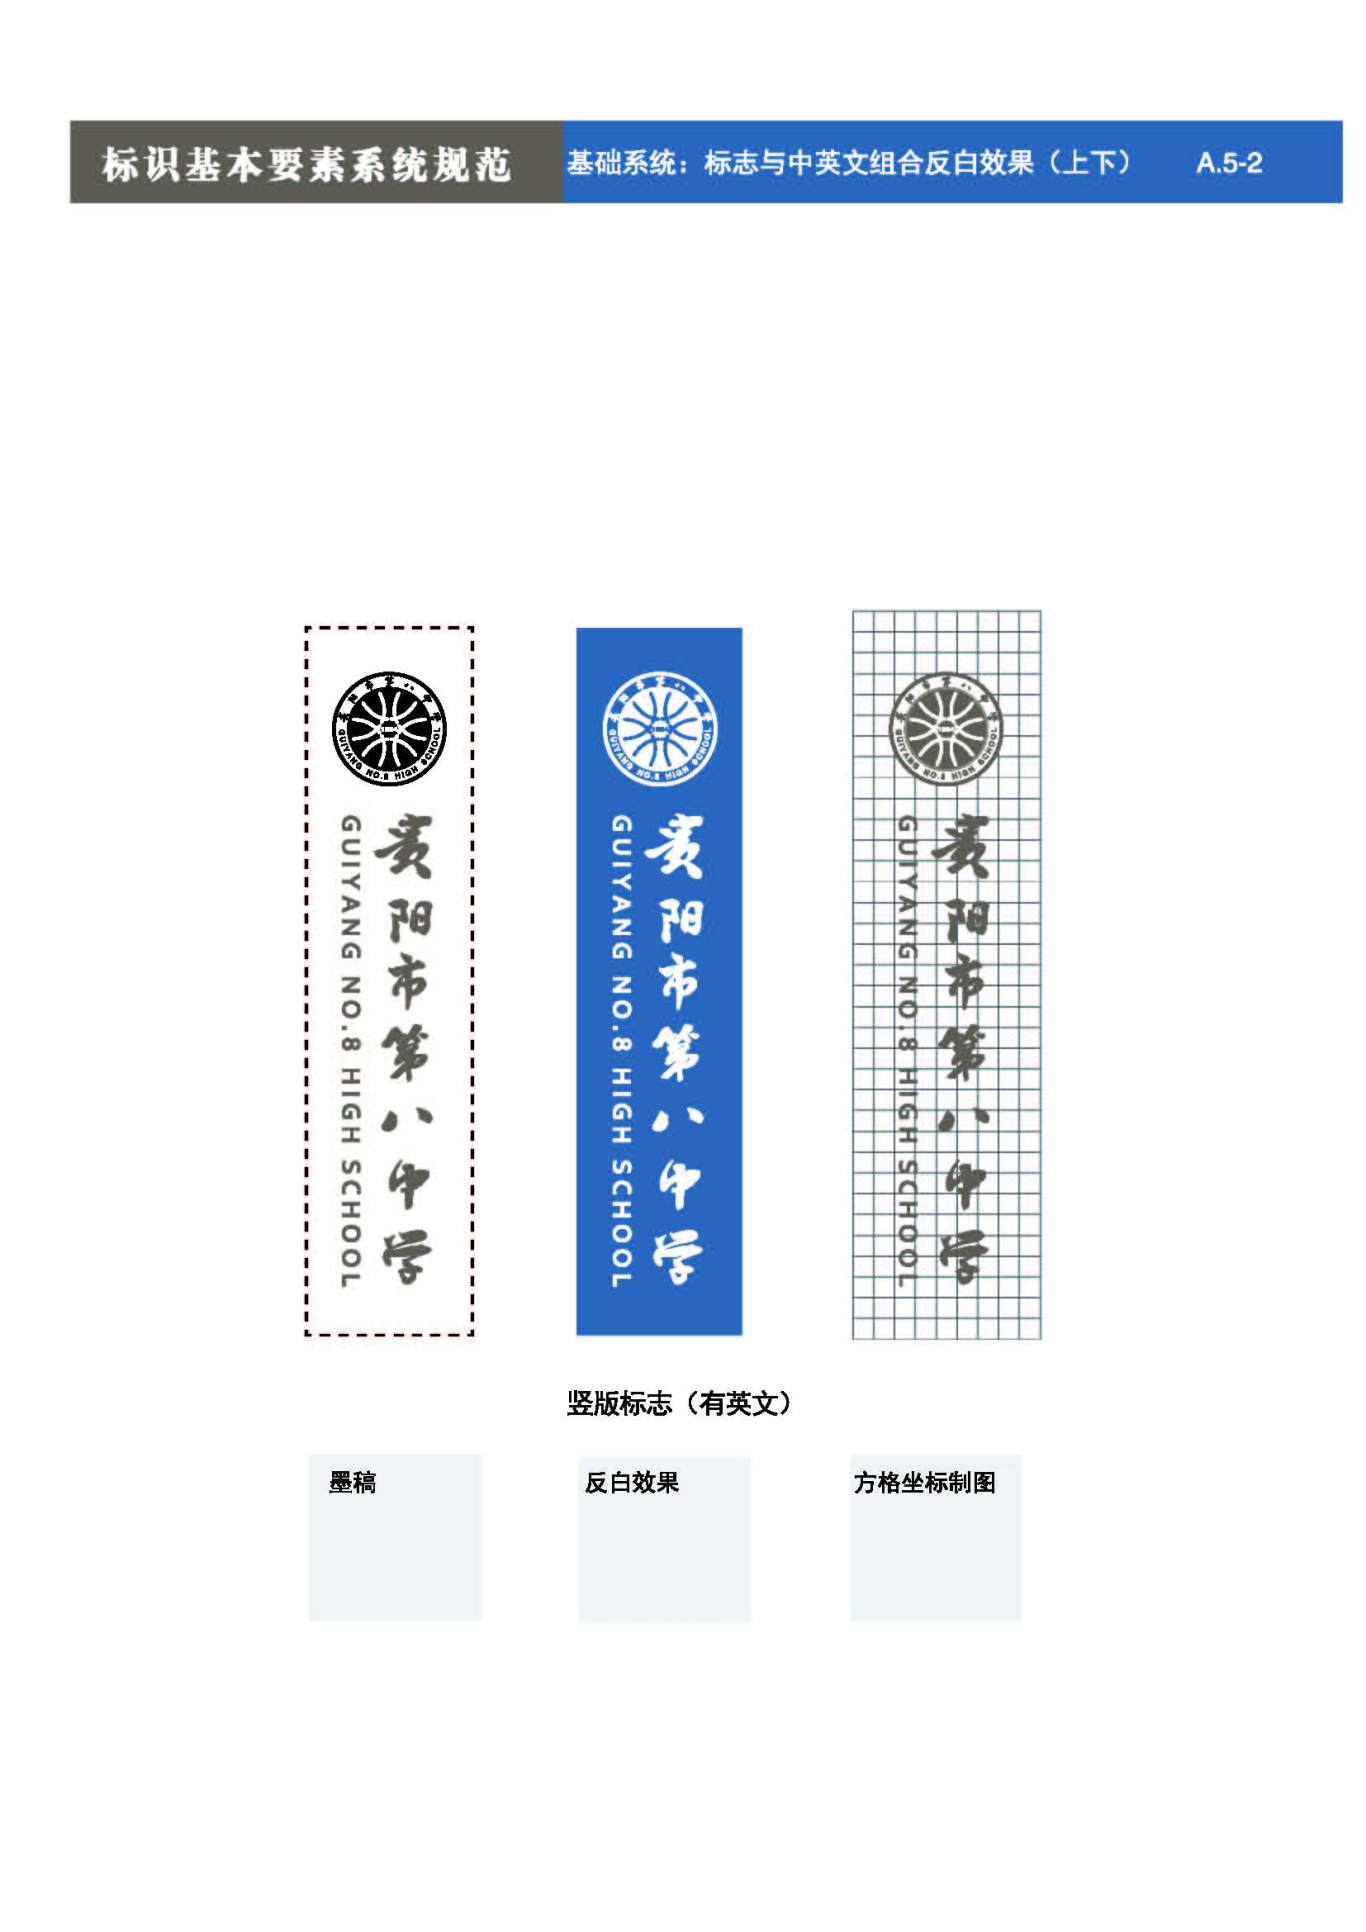 貴陽第八中學Logo、VIS設計圖13